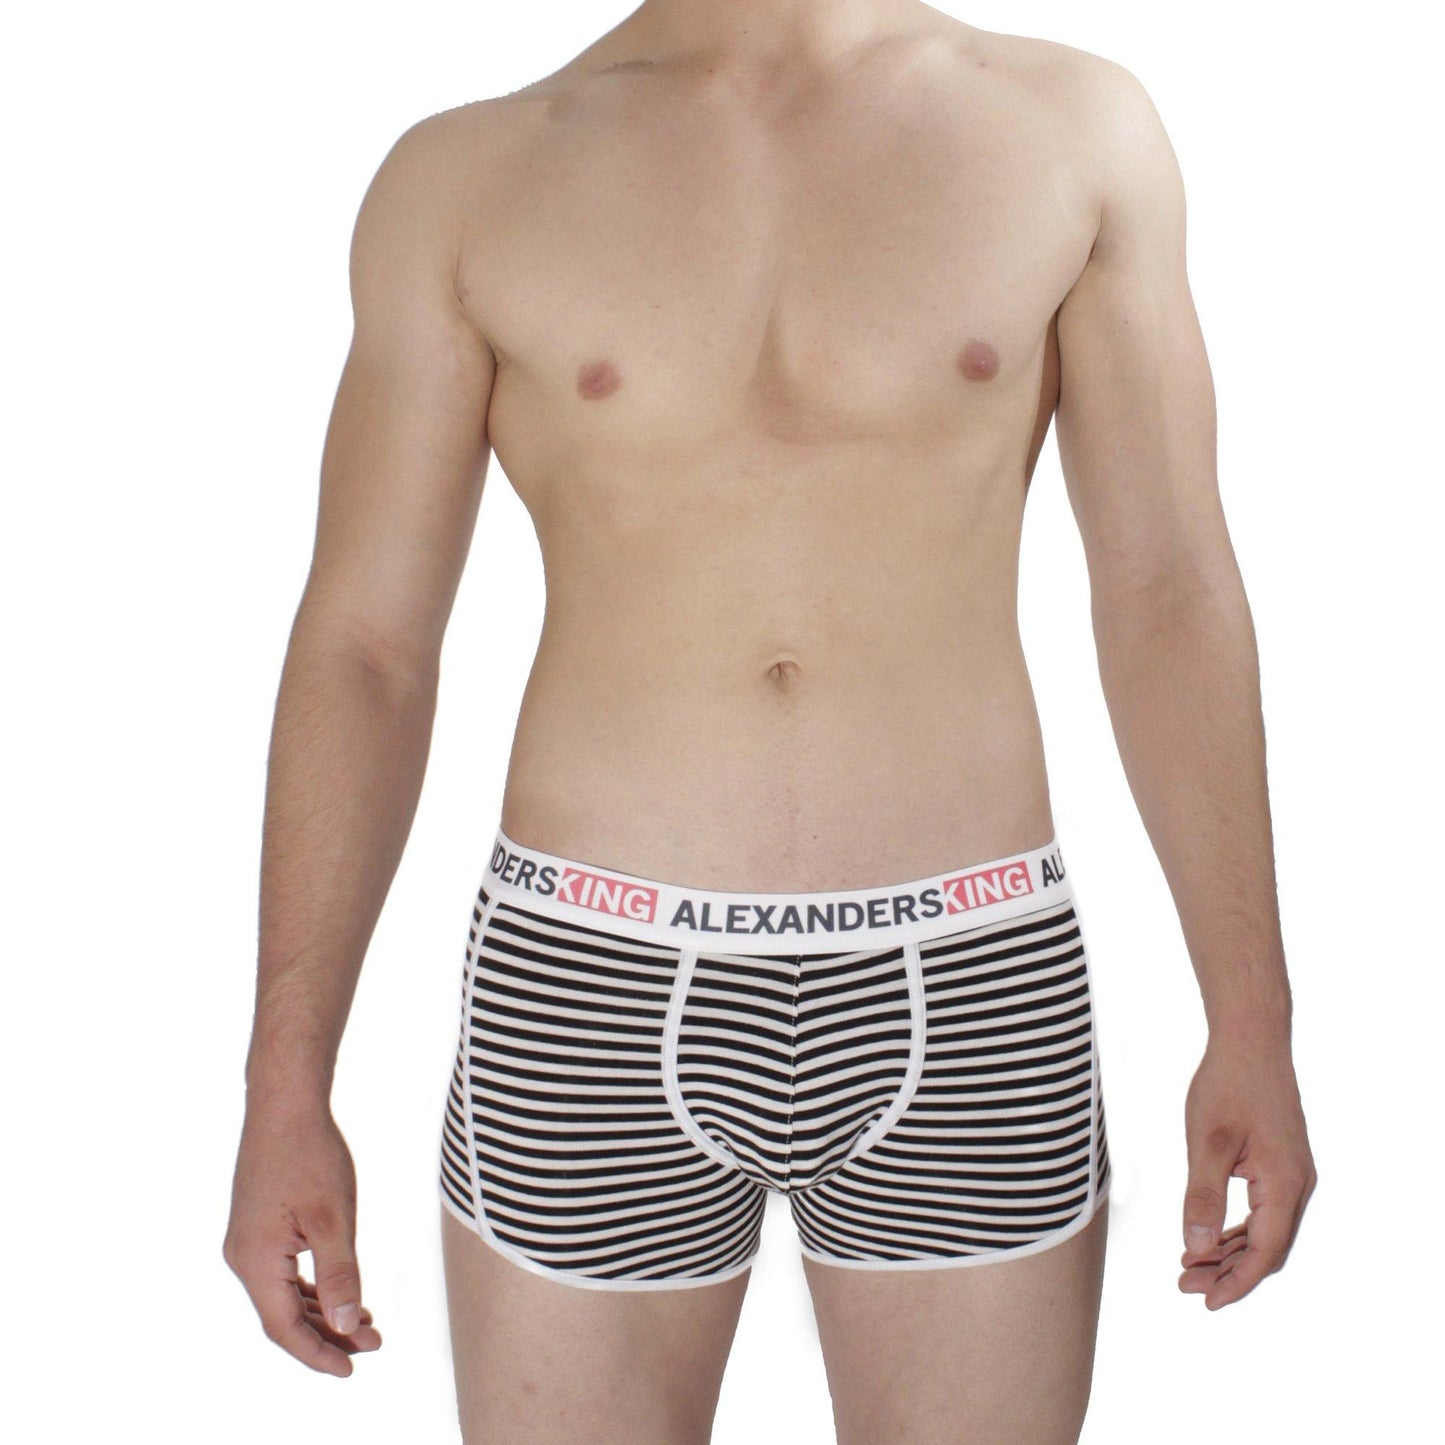 BP0019 - Horizontes Día y noche Comfort - AlexandersKing Underwear